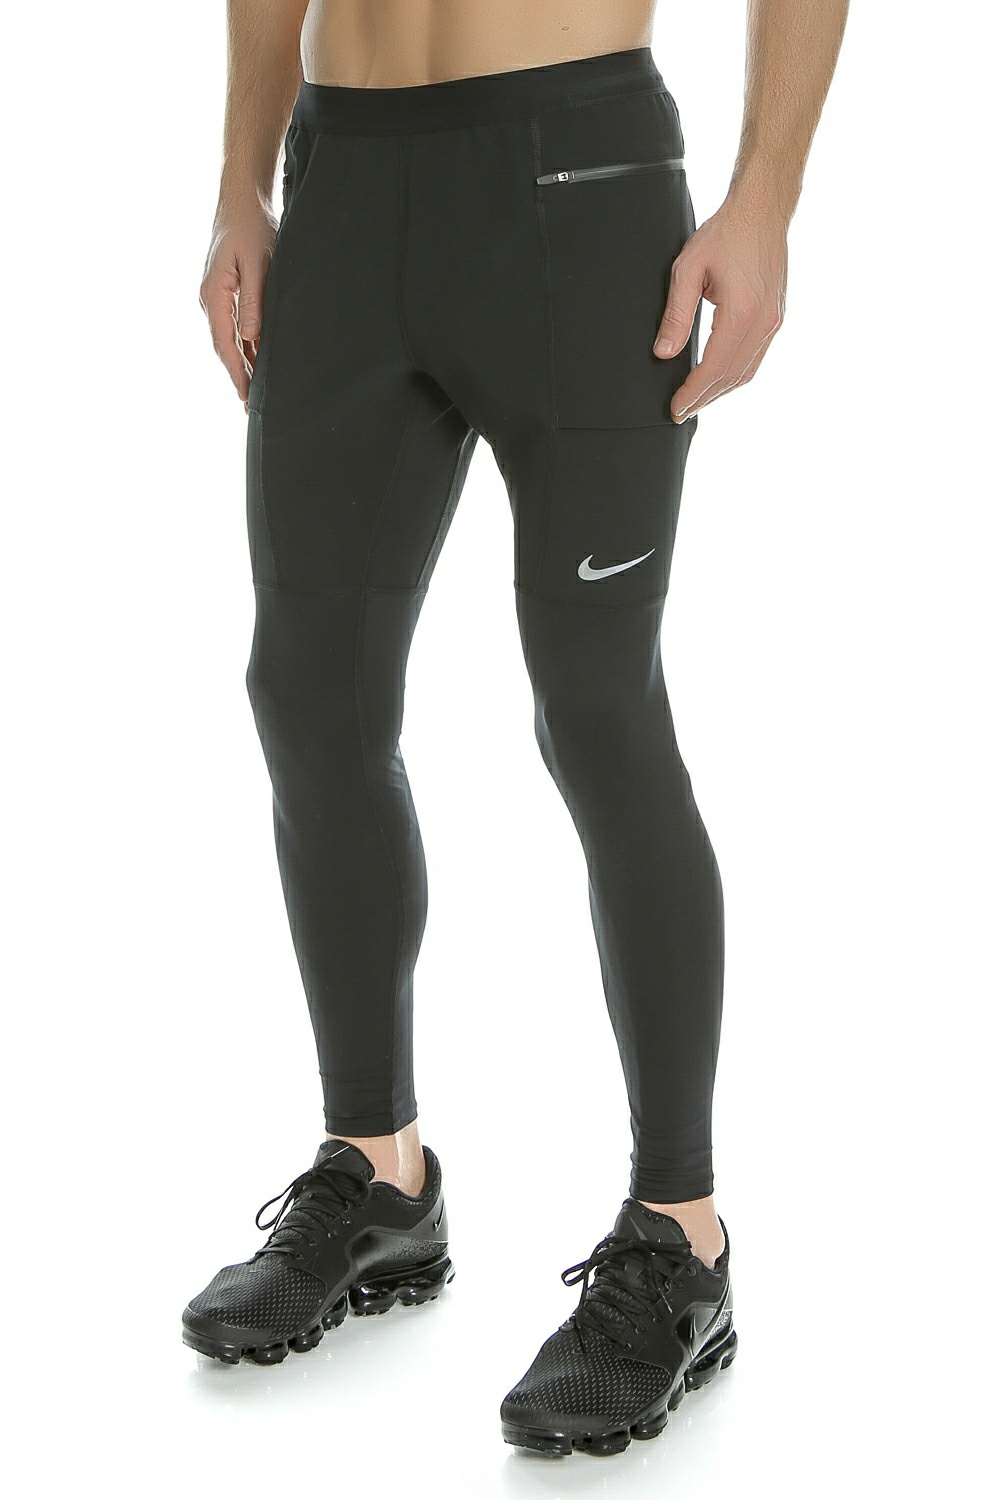 Ανδρικά/Ρούχα/Αθλητικά/Κολάν NIKE - Ανδρικό μακρύ κολάν Nike UTILITY μαύρο